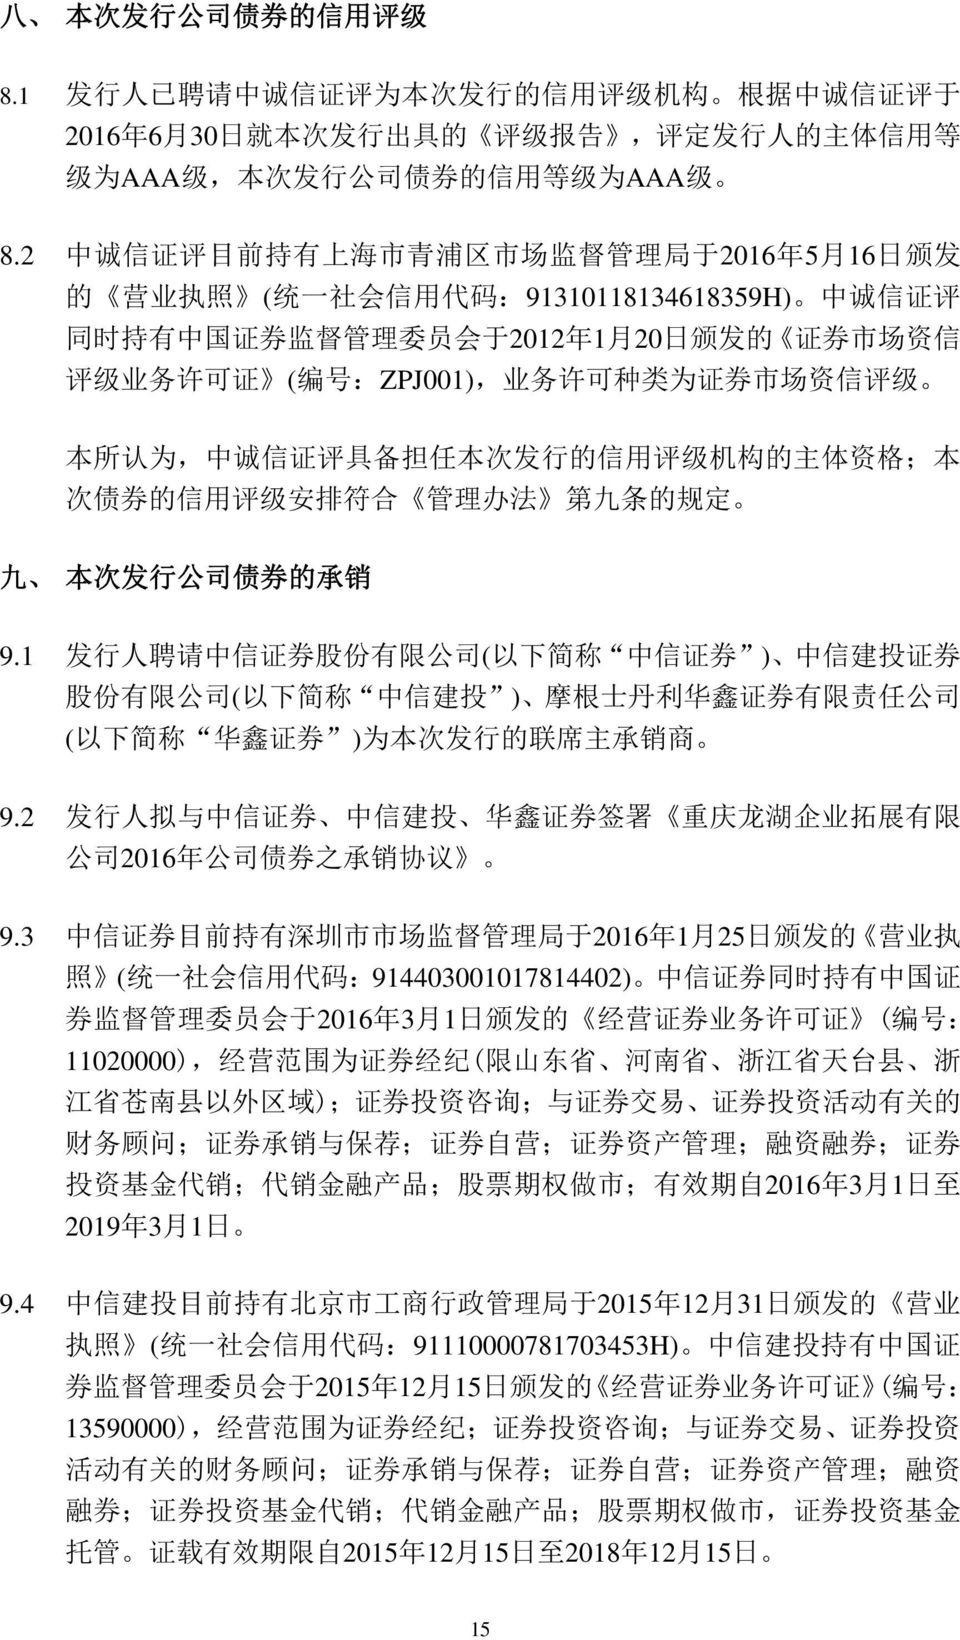 2 中 诚 信 证 评 目 前 持 有 上 海 市 青 浦 区 市 场 监 督 管 理 局 于 2016 年 5 月 16 日 颁 发 的 营 业 执 照 ( 统 一 社 会 信 用 代 码 :91310118134618359H) 中 诚 信 证 评 同 时 持 有 中 国 证 券 监 督 管 理 委 员 会 于 2012 年 1 月 20 日 颁 发 的 证 券 市 场 资 信 评 级 业